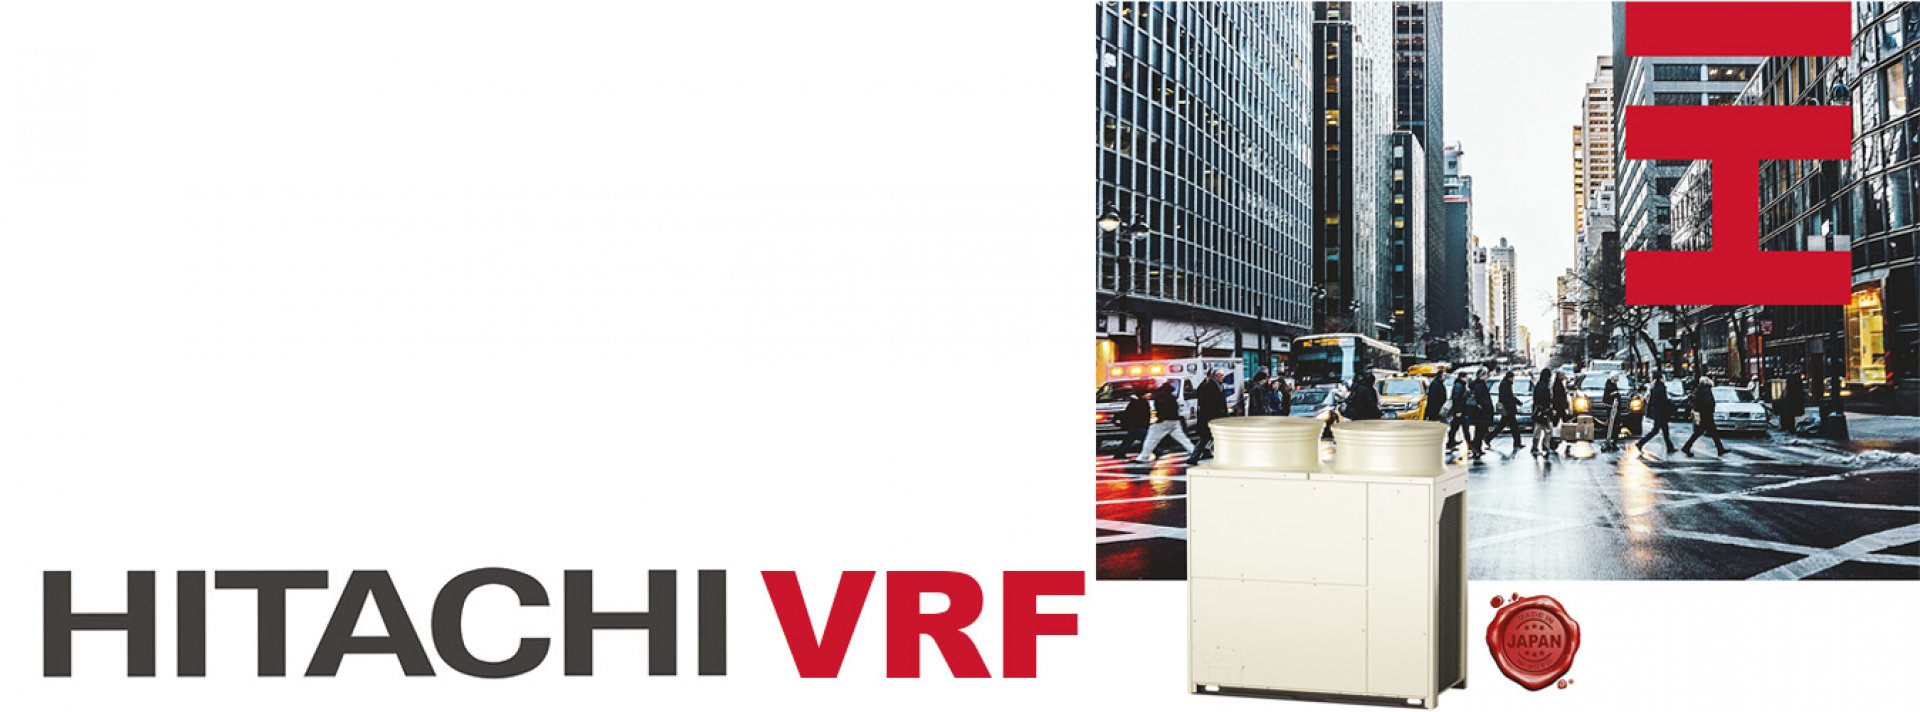 Geleceği Hissedin, <br>Hitachi VRF ile Yeni Bir Sayfa Açın!